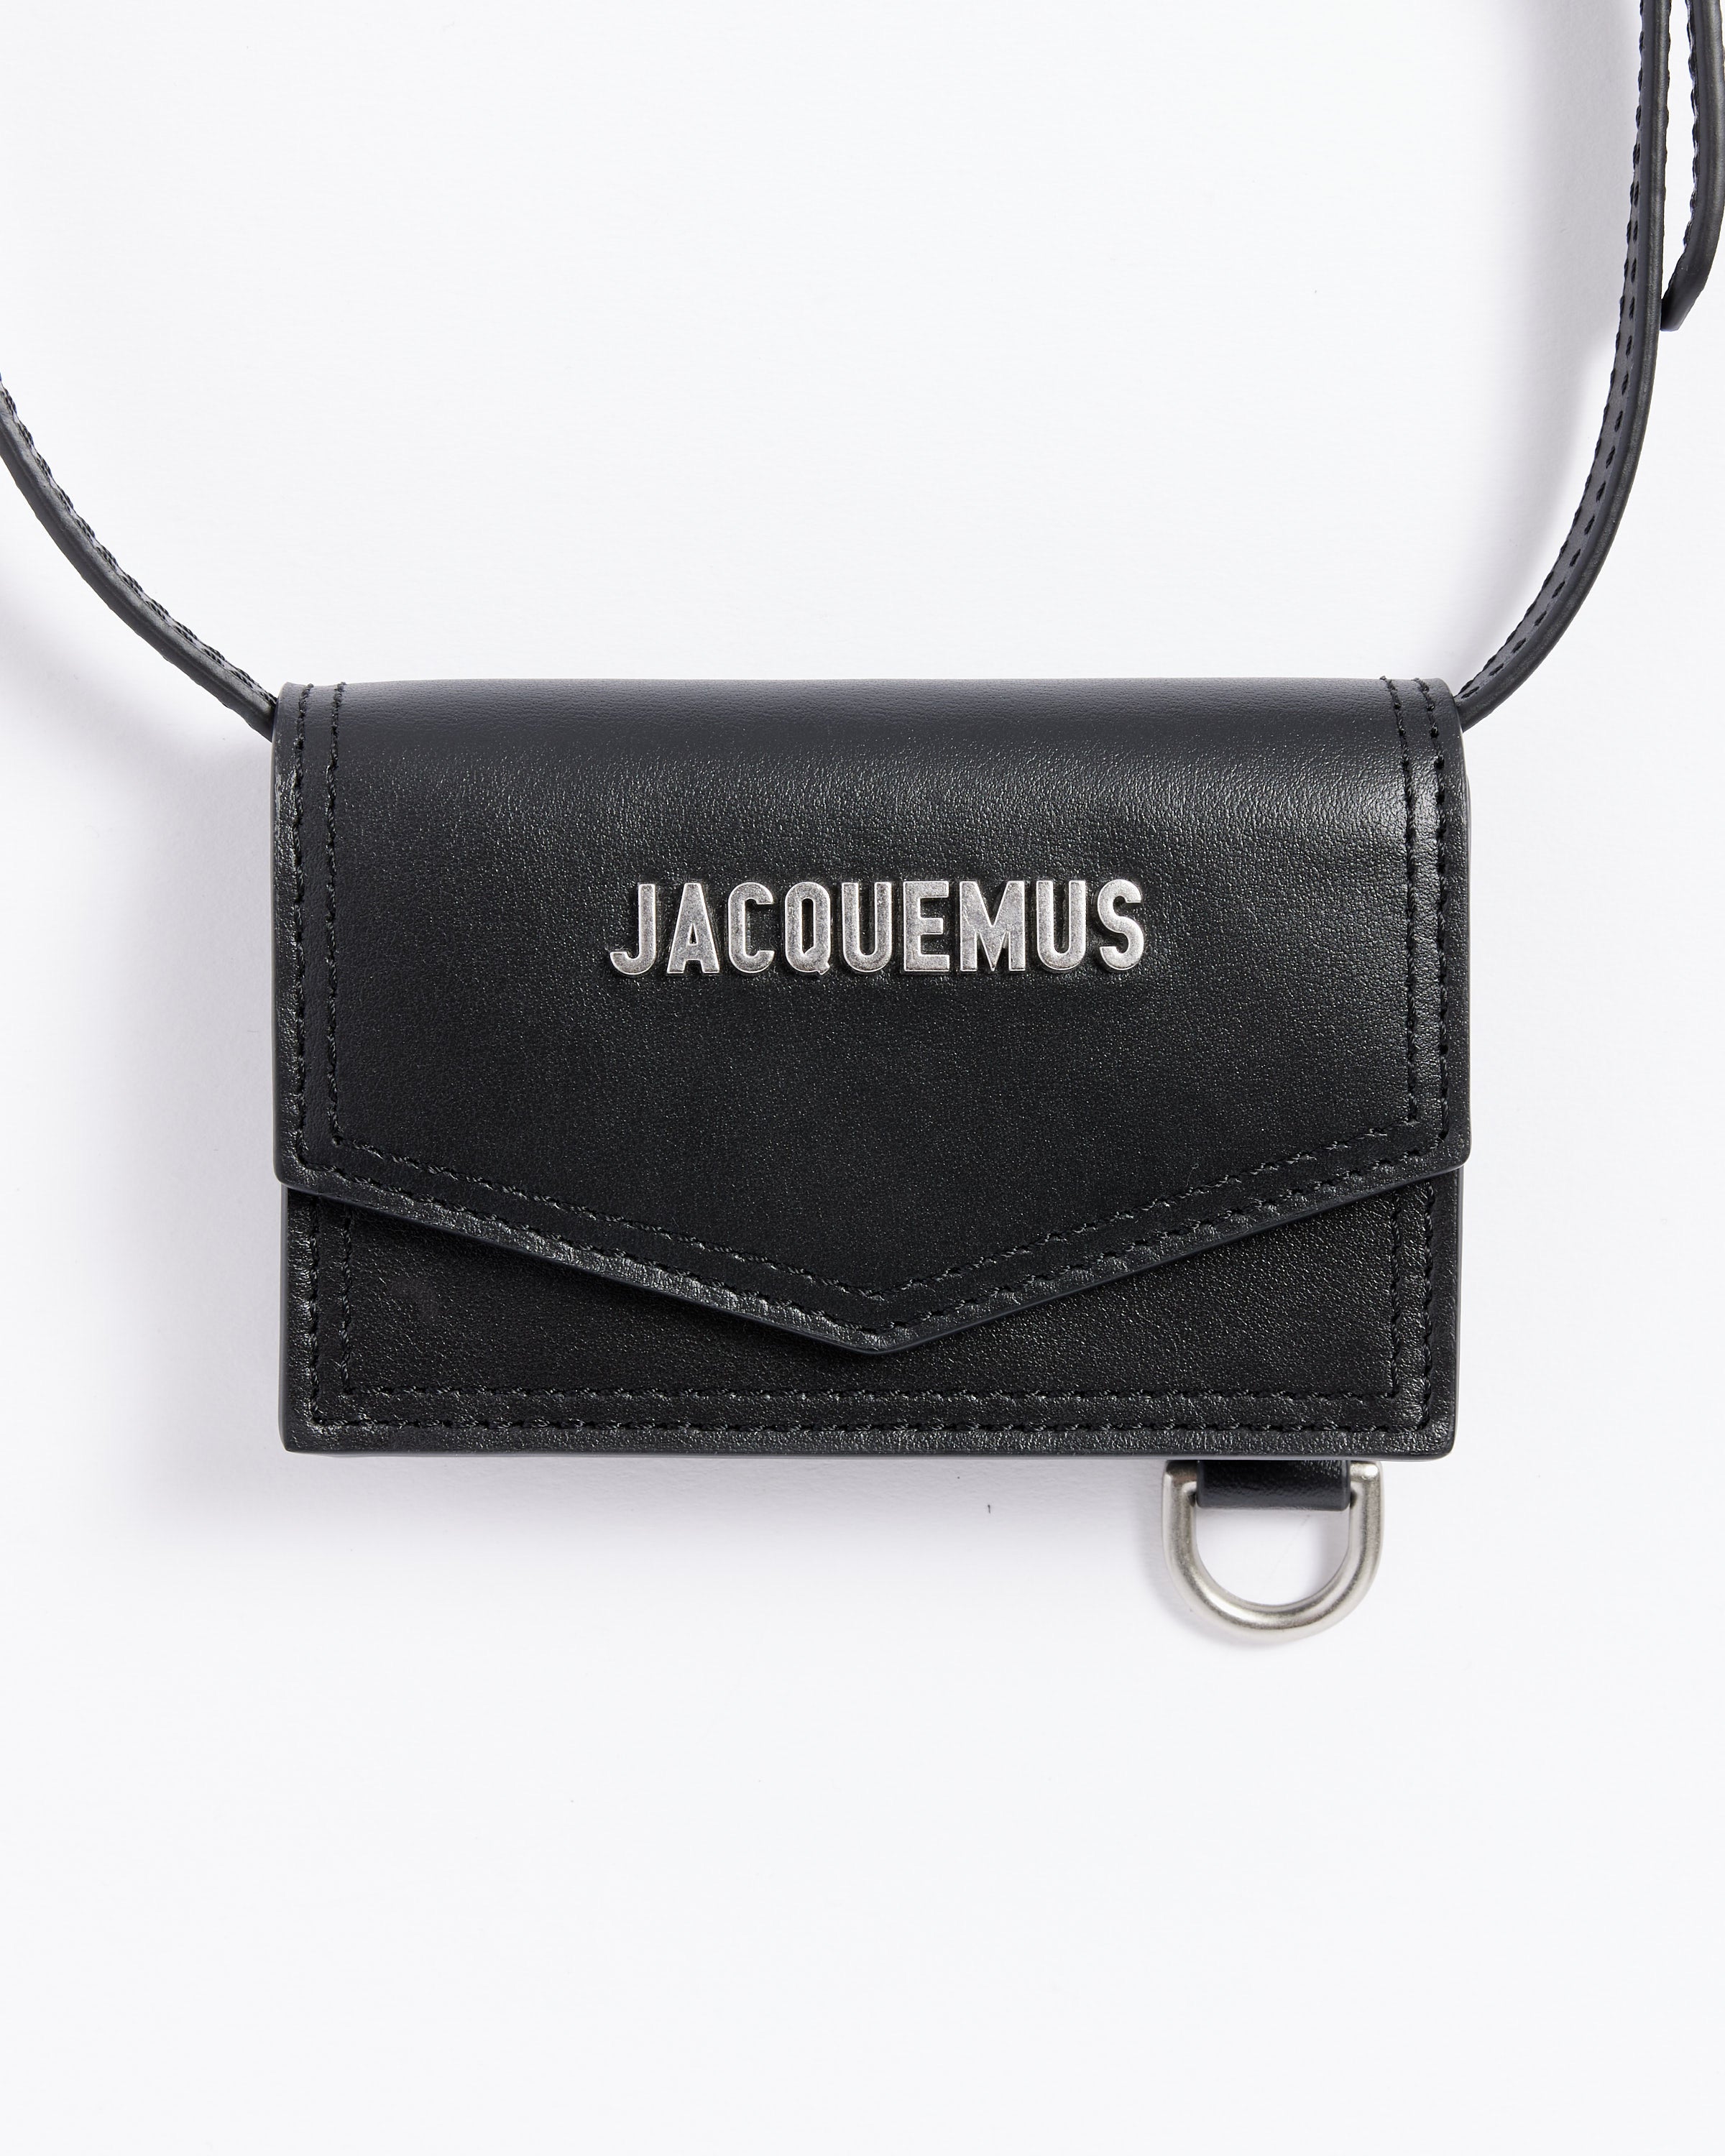 Jacquemus Le porte Jacquemus Envelope Wallet Navy